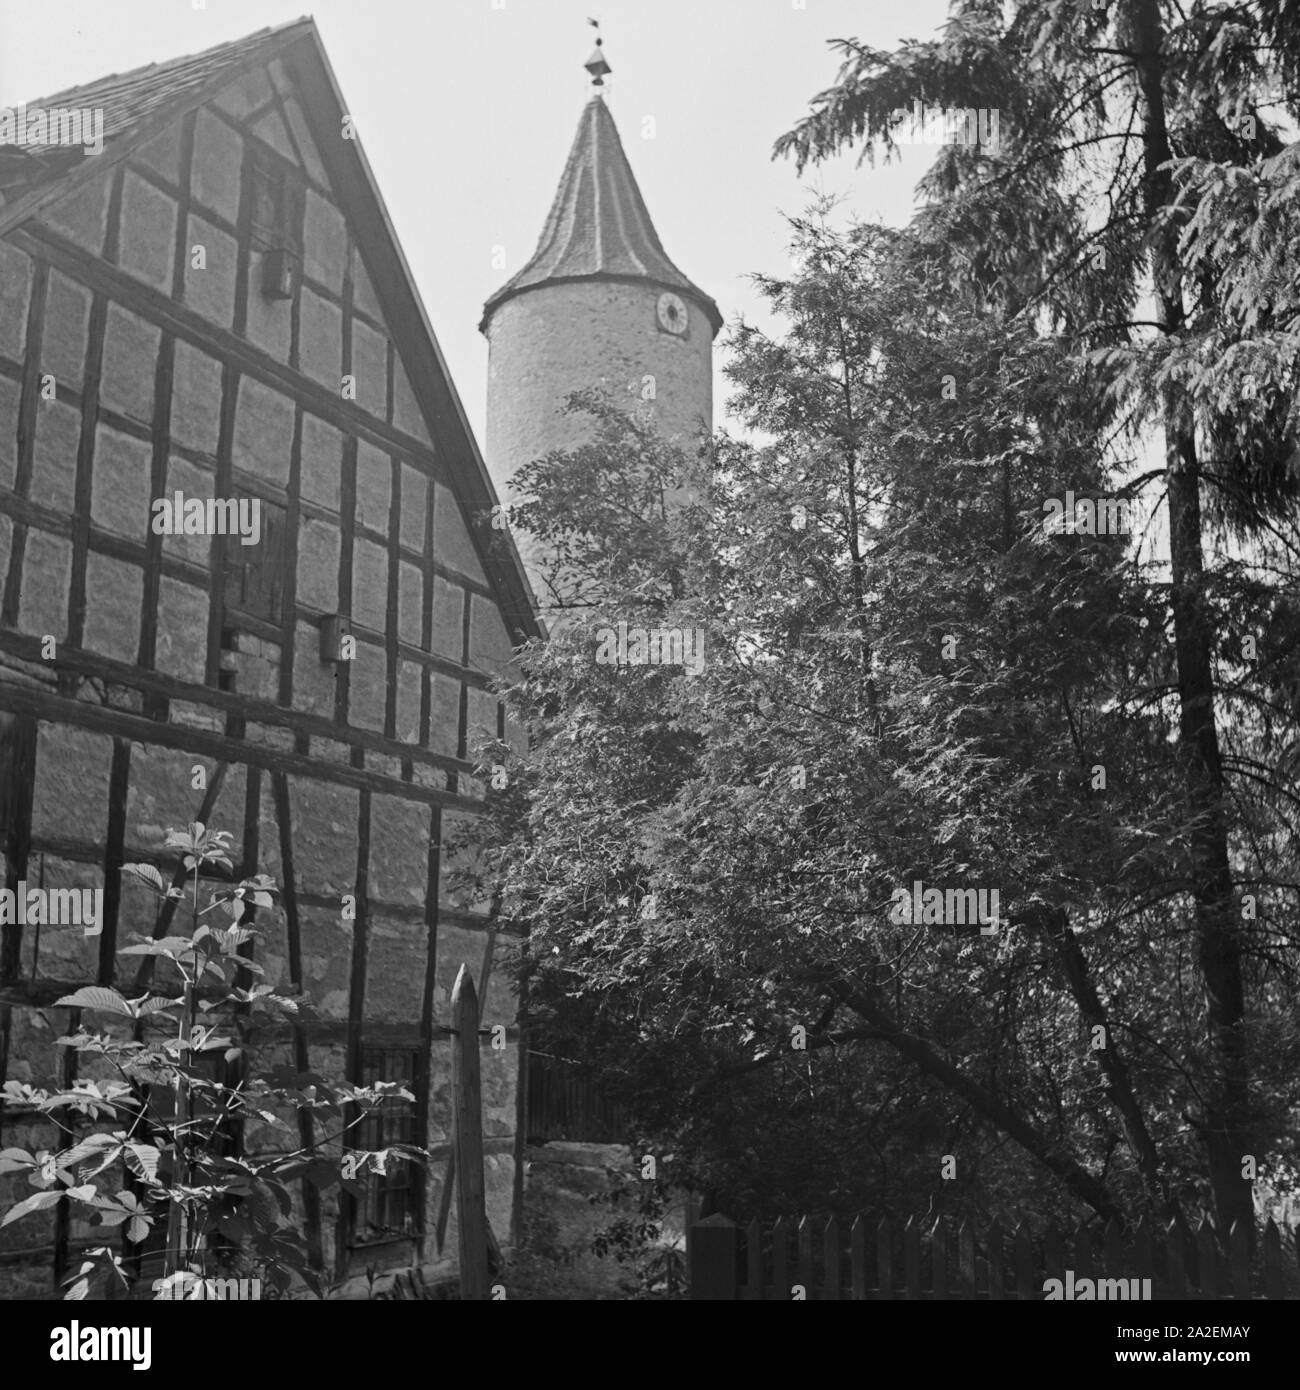 Fachwerkhaus am Diebsturm in Crailsheim, Deutschland 1930er Jahre. Casa con travi di legno vicino alla torre Diebsturm a Crailsheim, Germania 1930s. Foto Stock